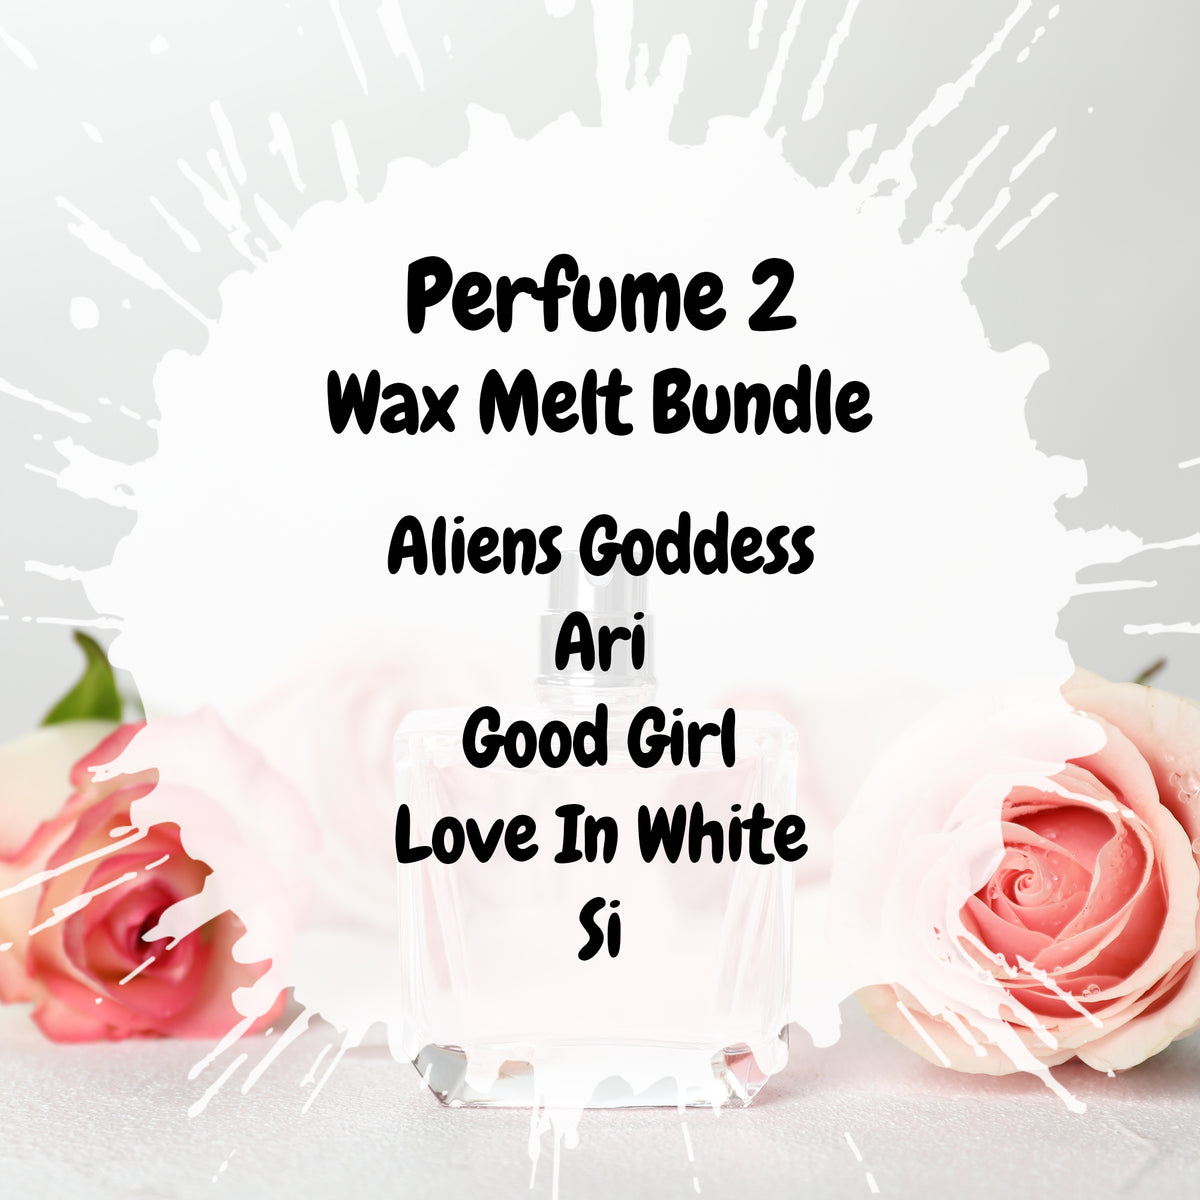 Perfume 2 Wax Melt Bundle